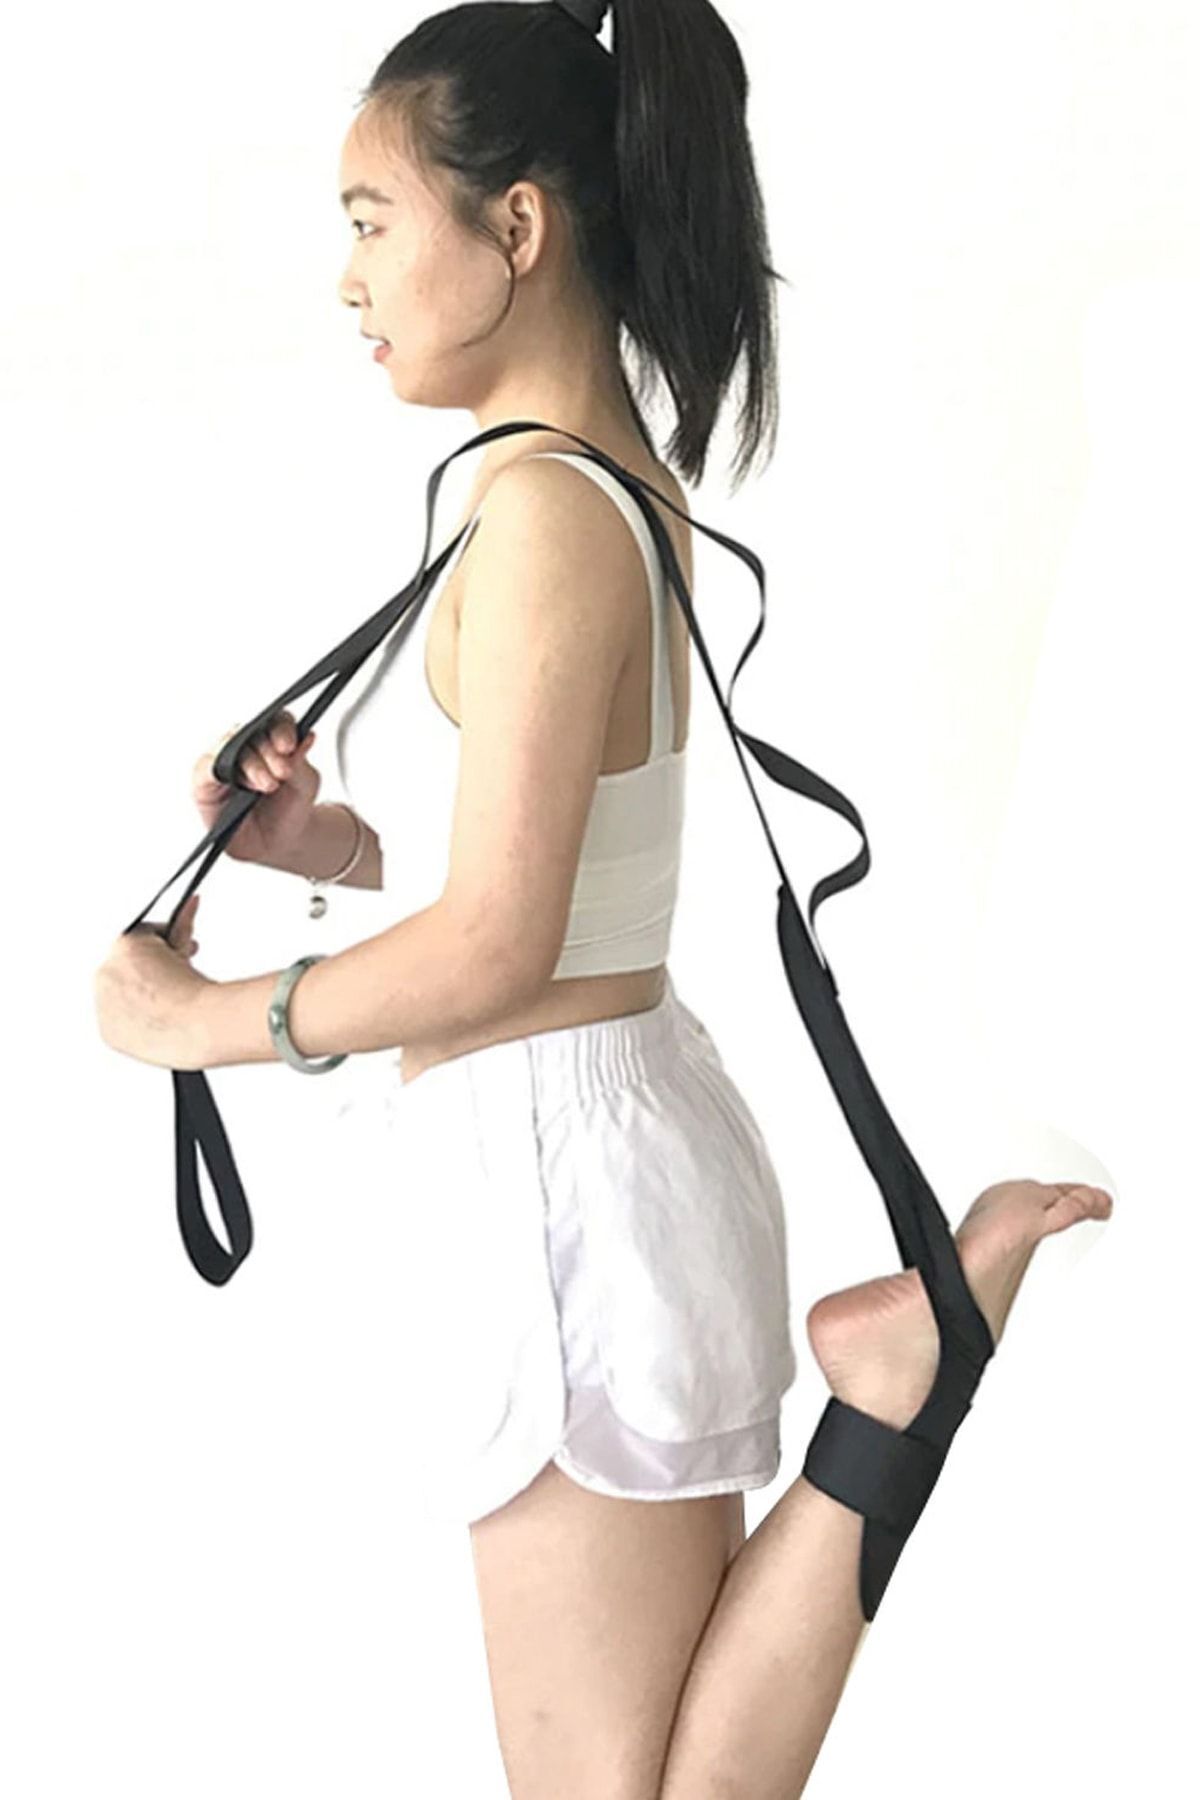 Bundera Yoga Linda Siyah Ayak Bacak Germe Askısı Pilates Fitness Kardiyo Vücut Kas Geliştirici Spor Aleti